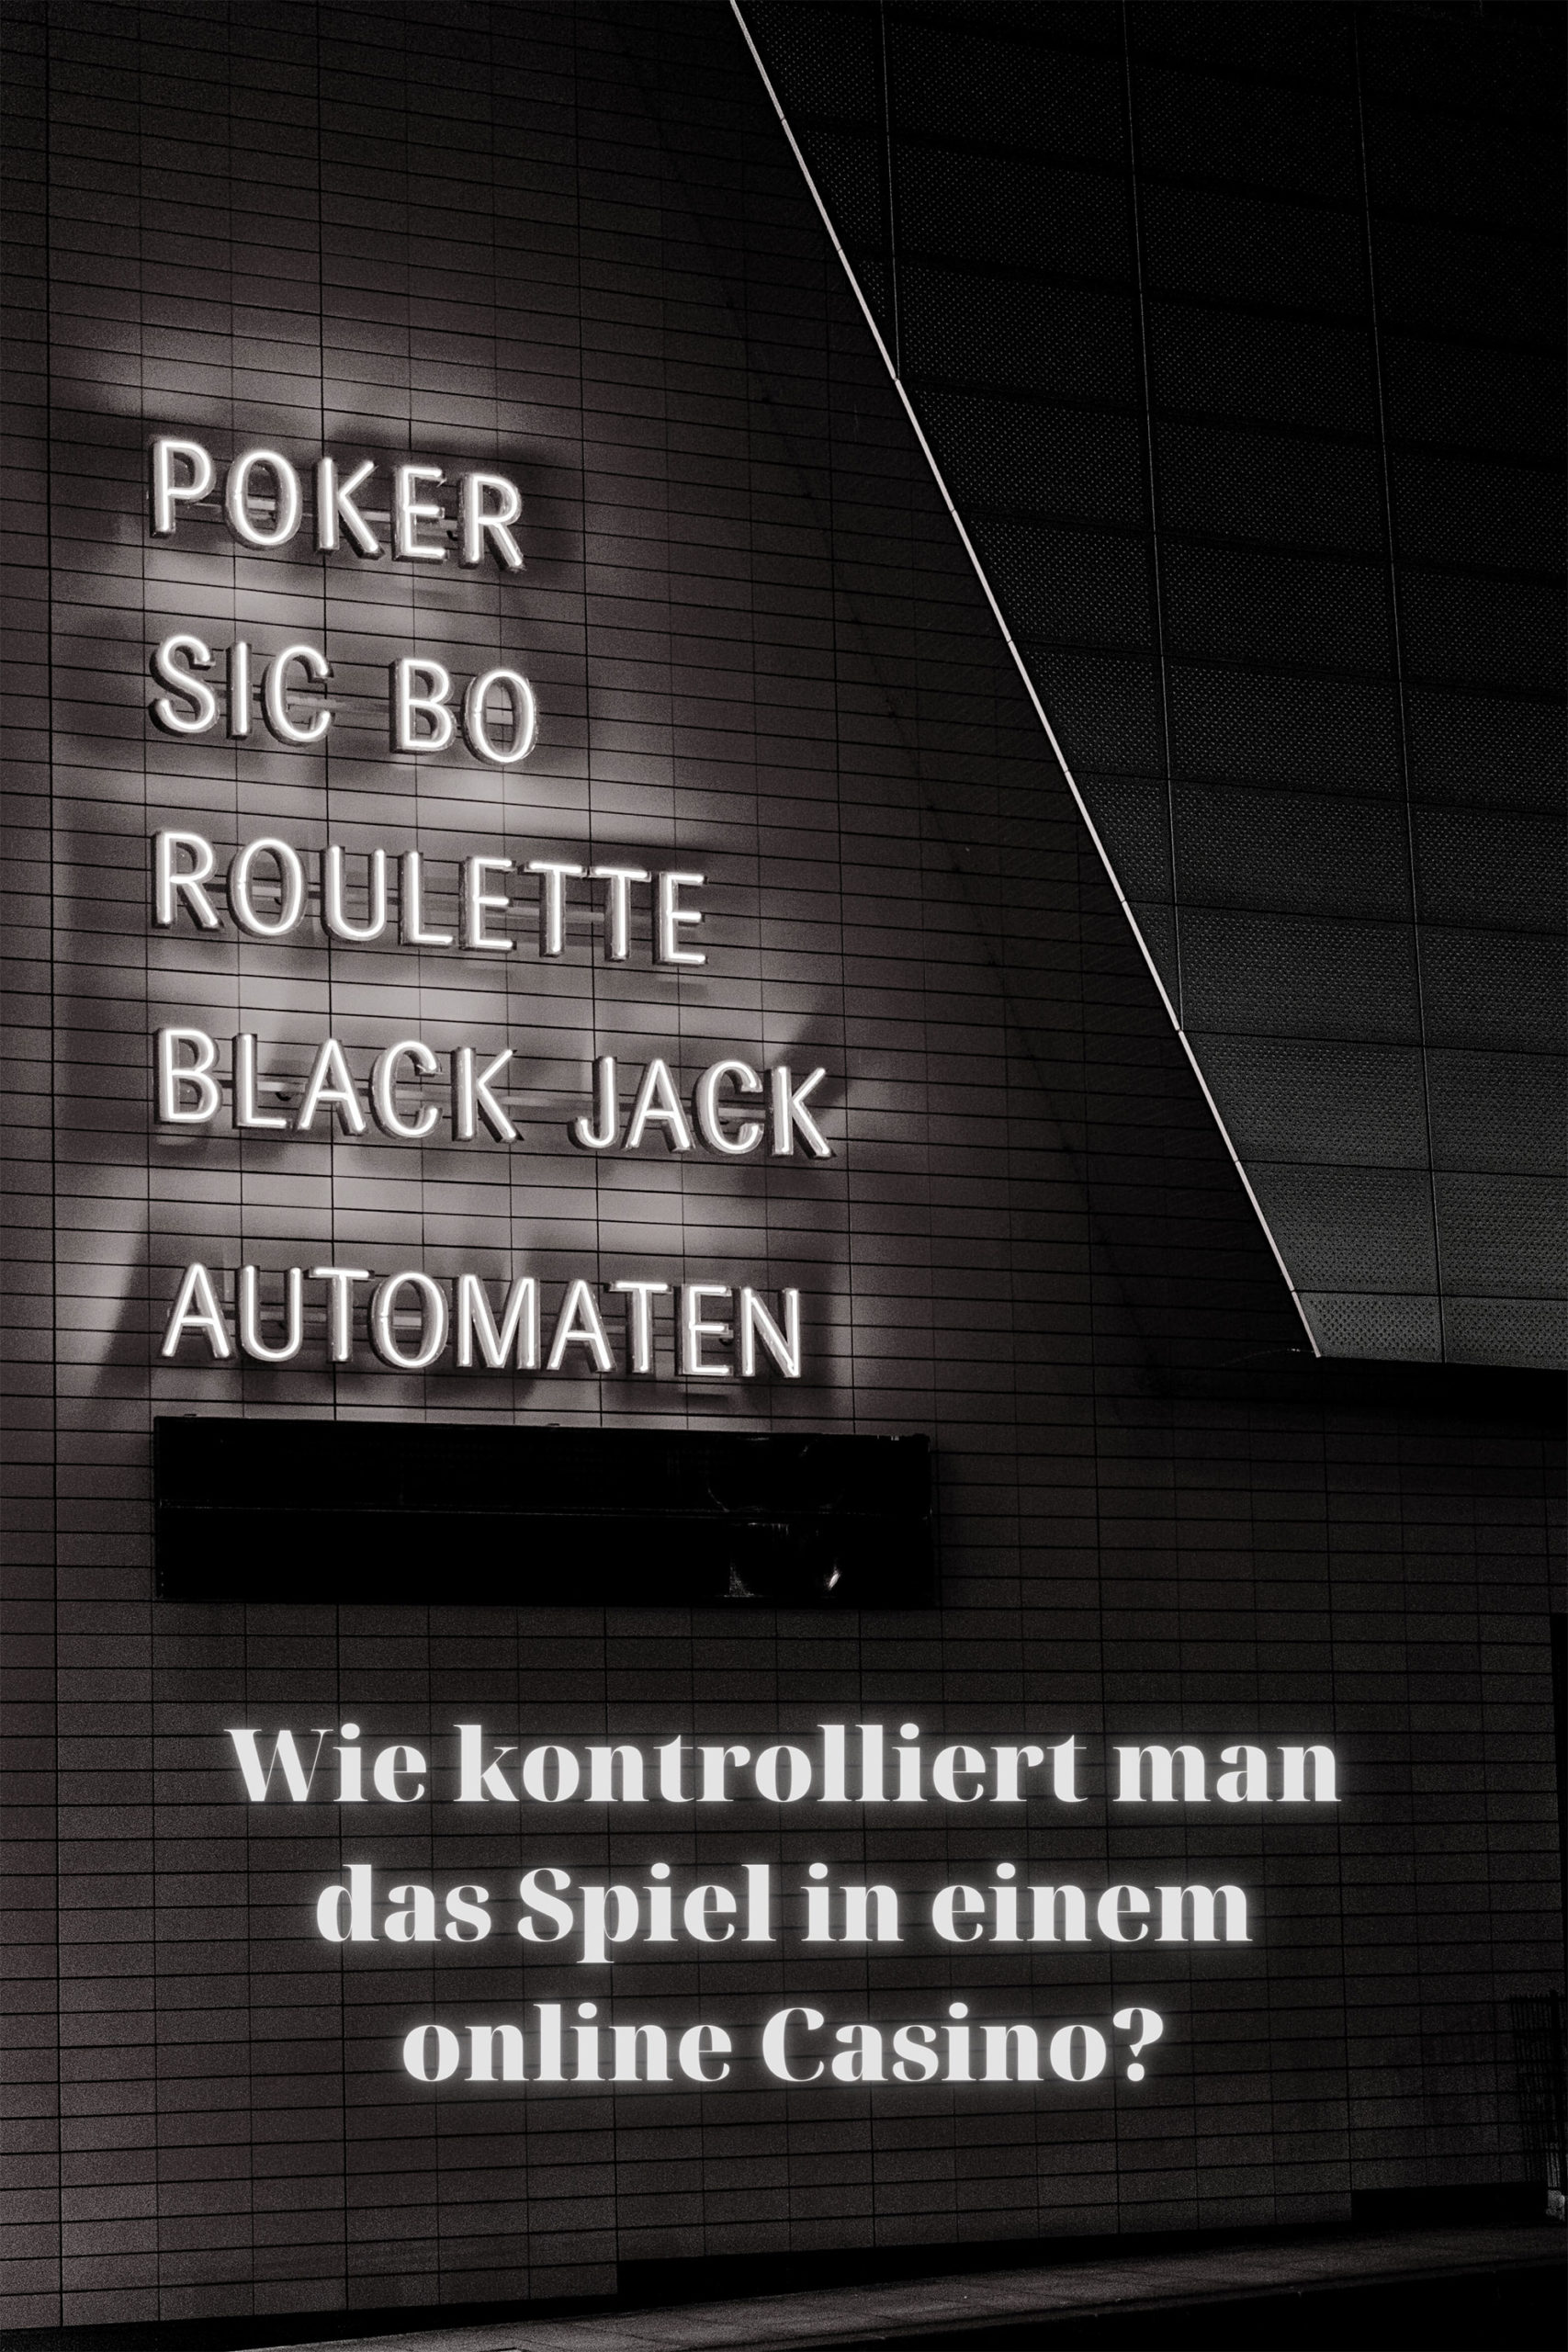 Online Casinos in Österreich Chancen für alle